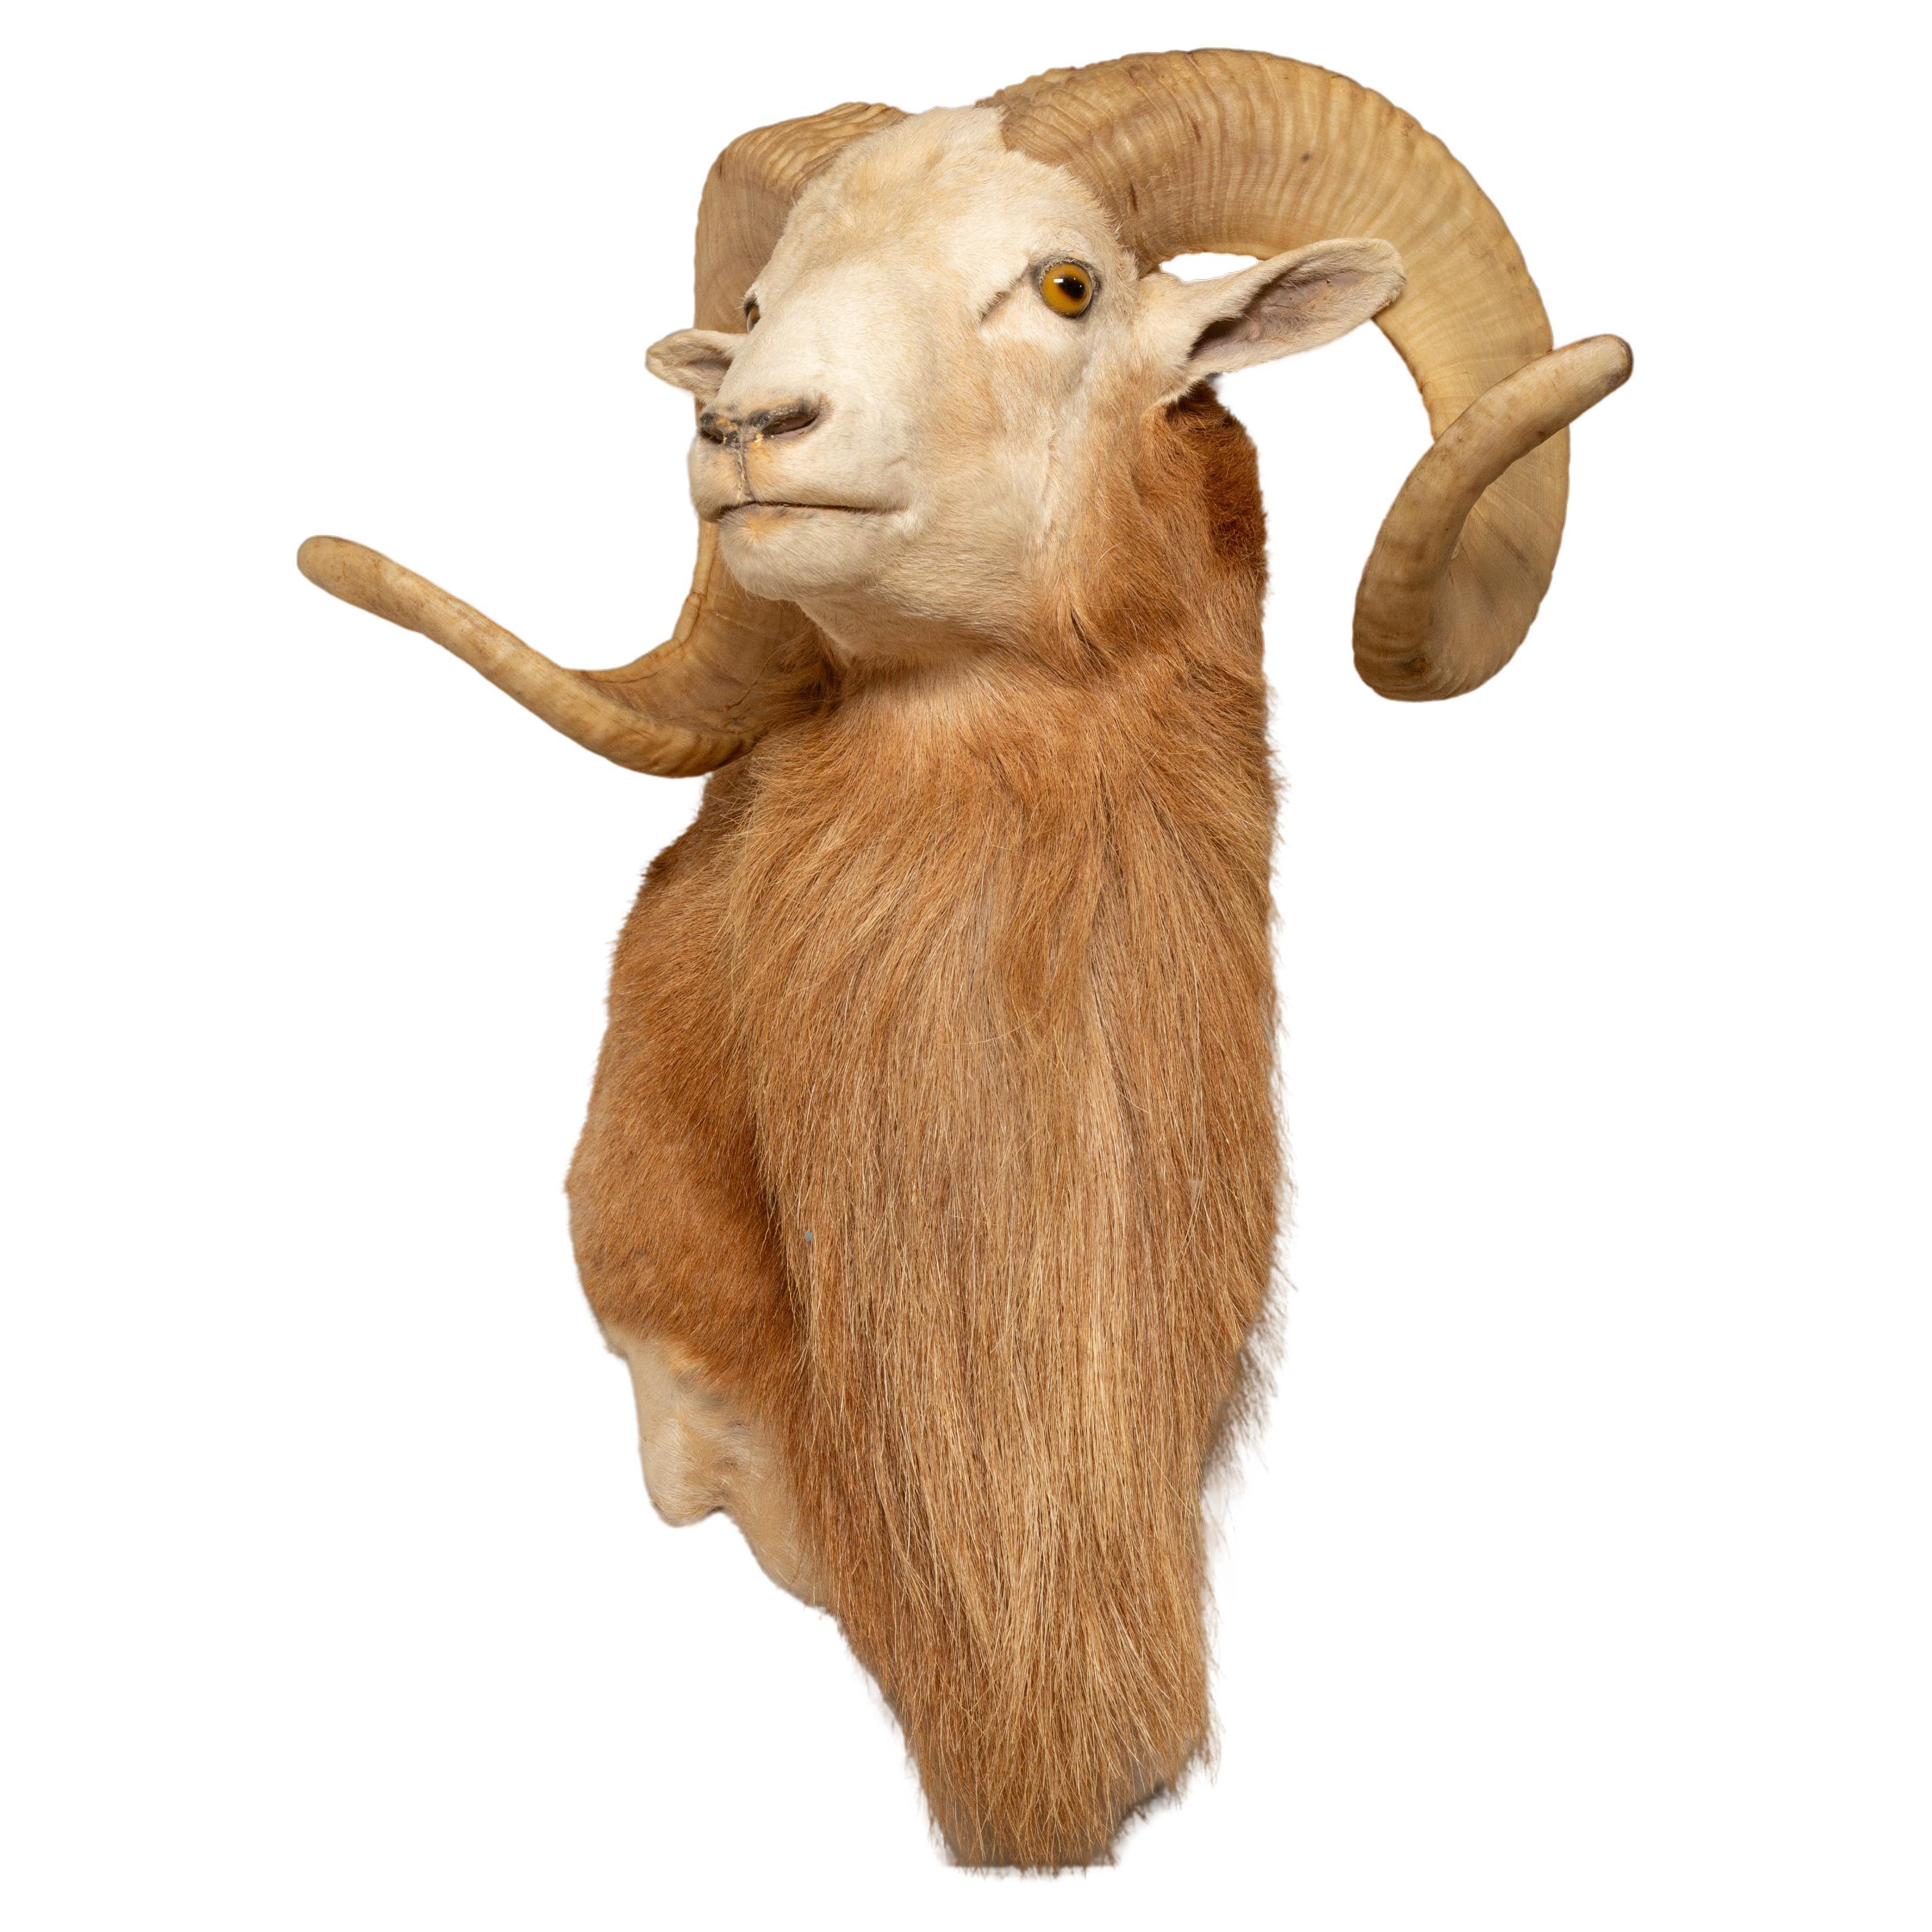 Das texanische Dall-Schaf wird gefeiert: Eine majestätische Wildtierart Nordamerikas